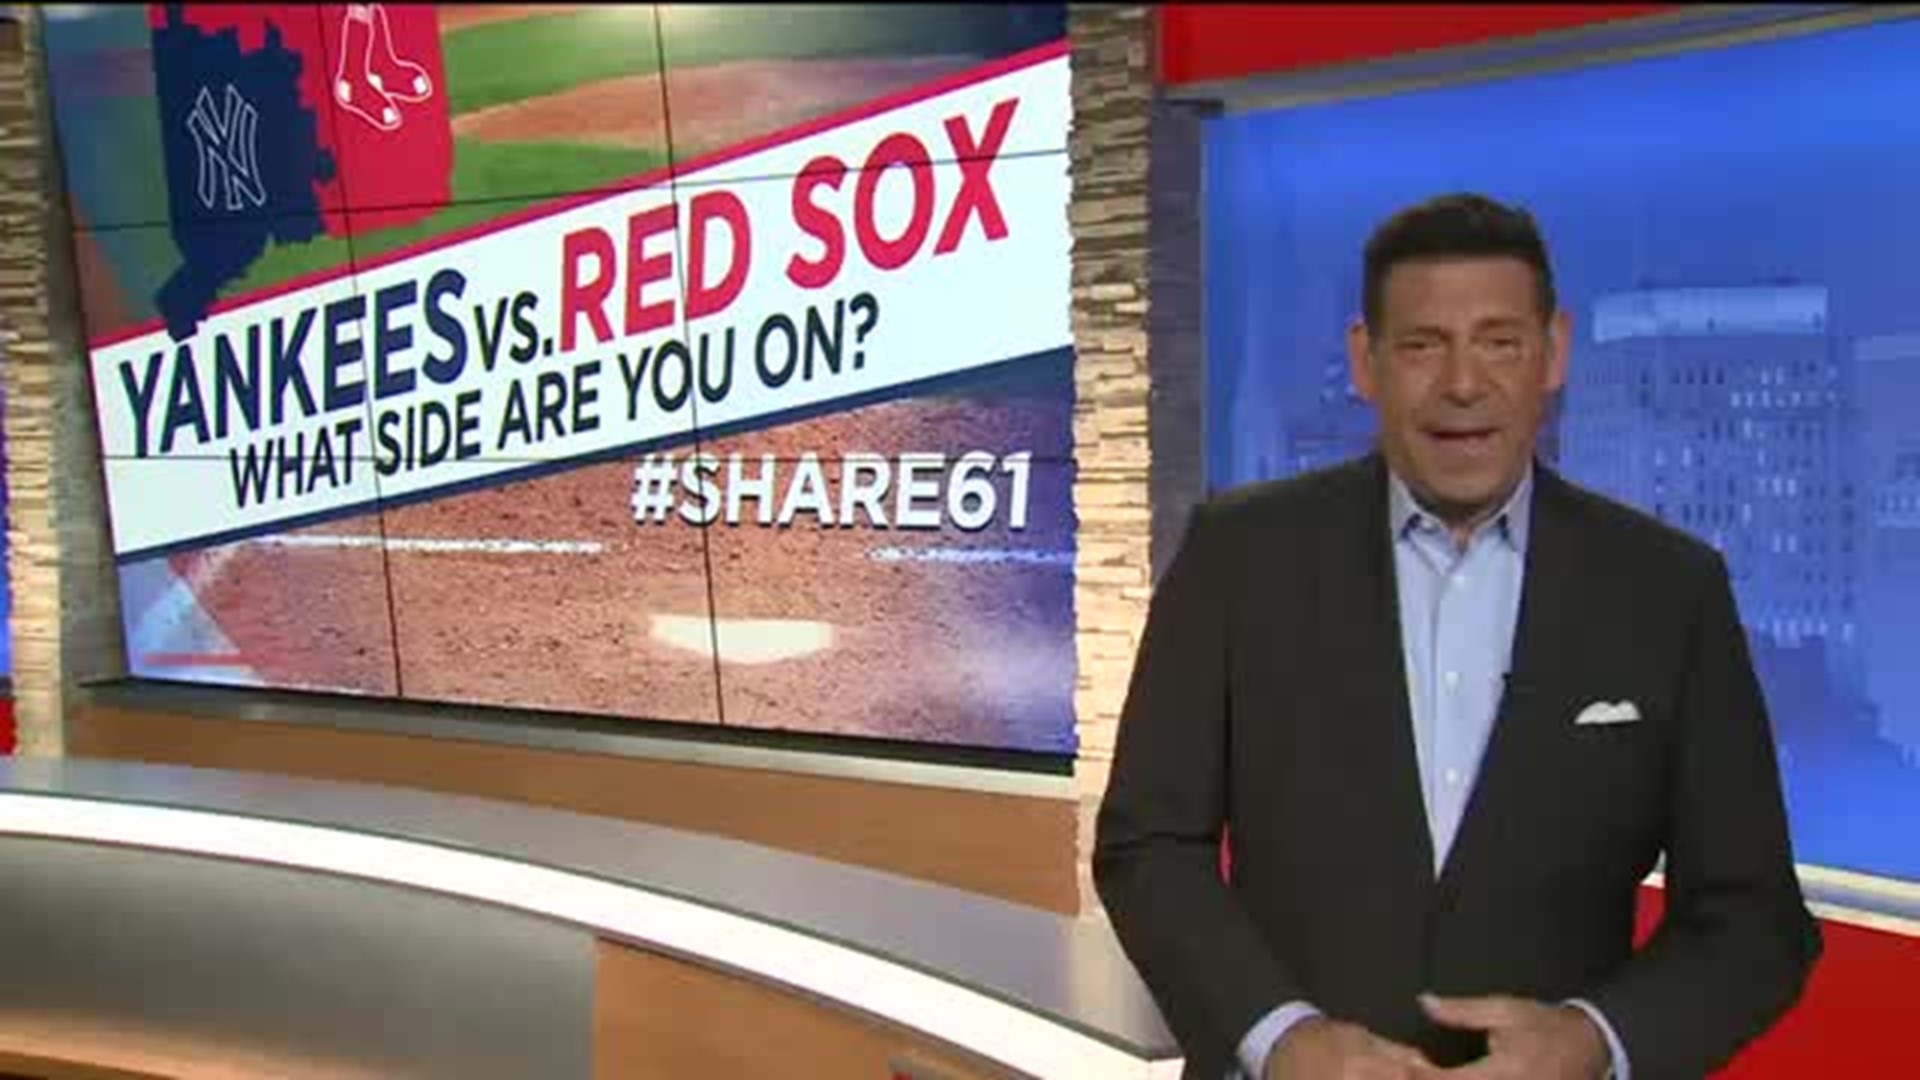 Yankees vs. Red Sox